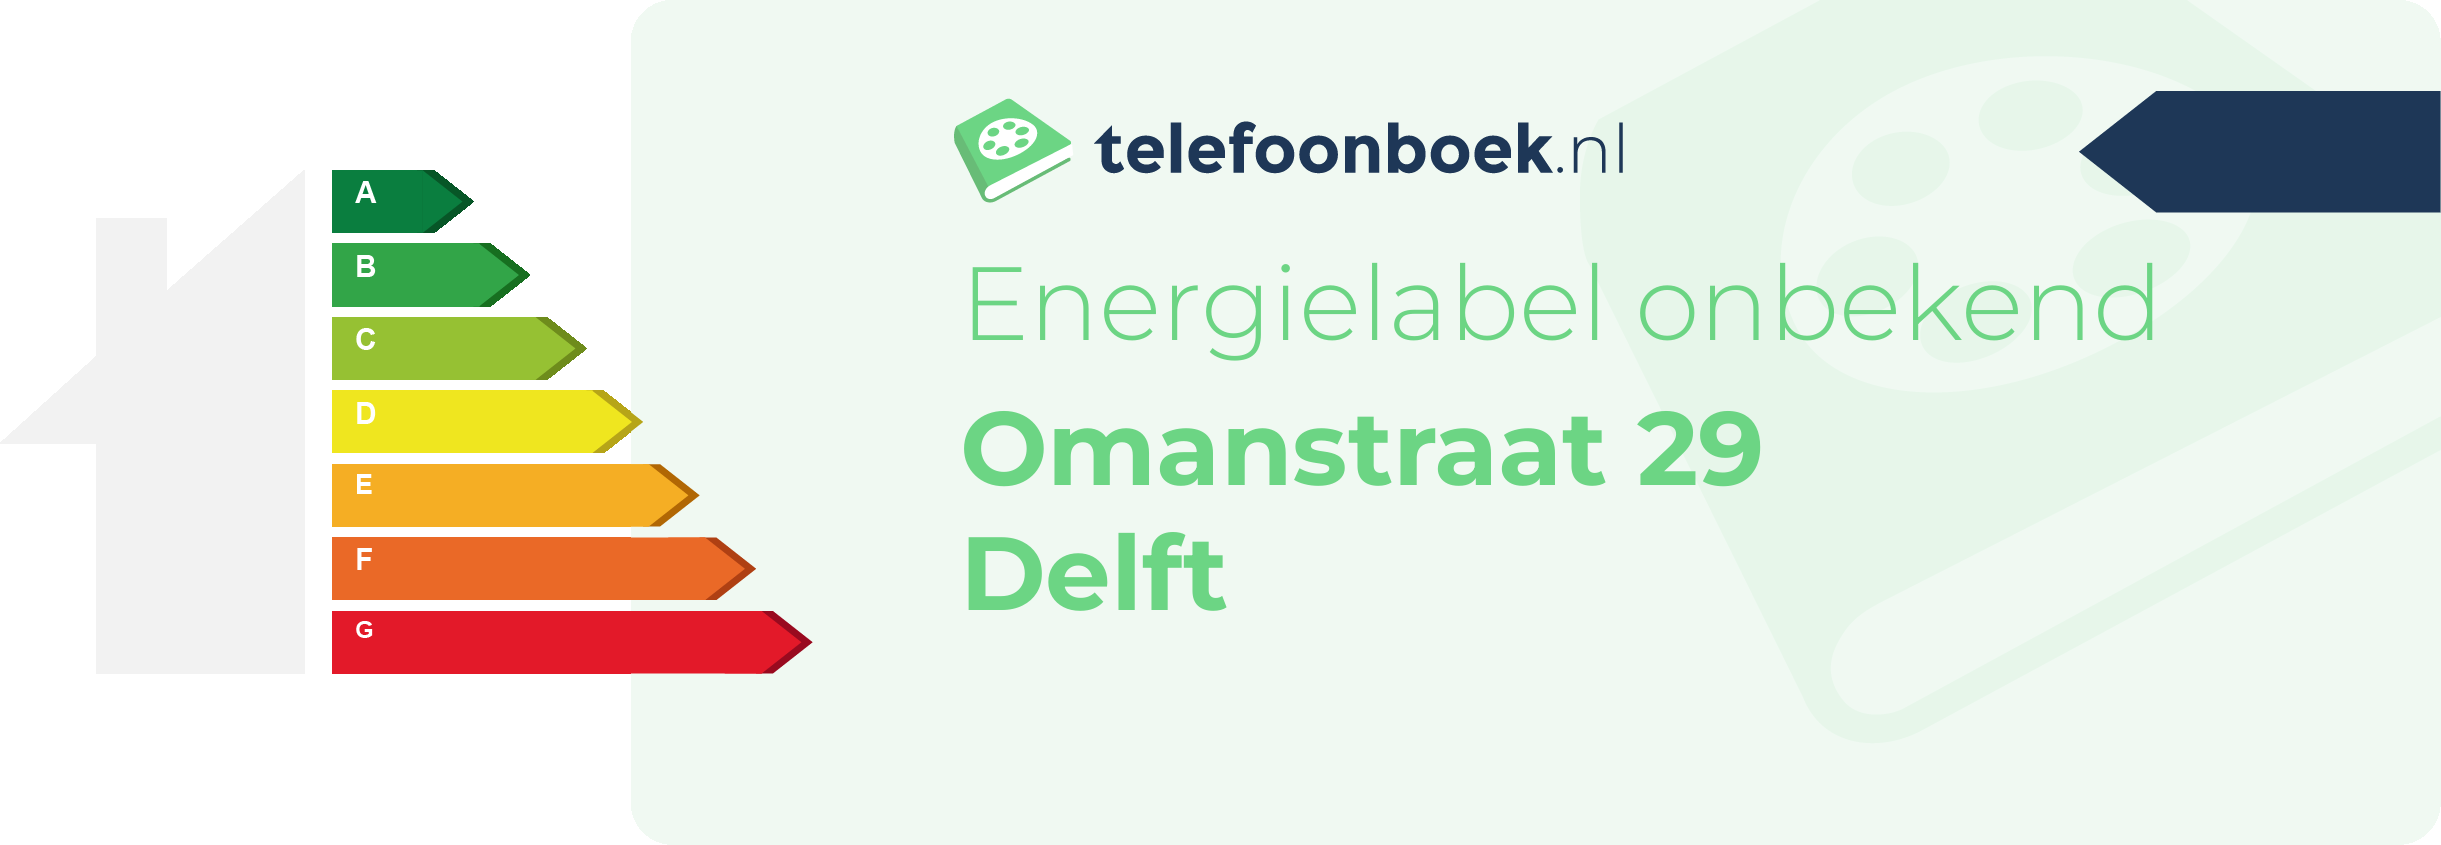 Energielabel Omanstraat 29 Delft